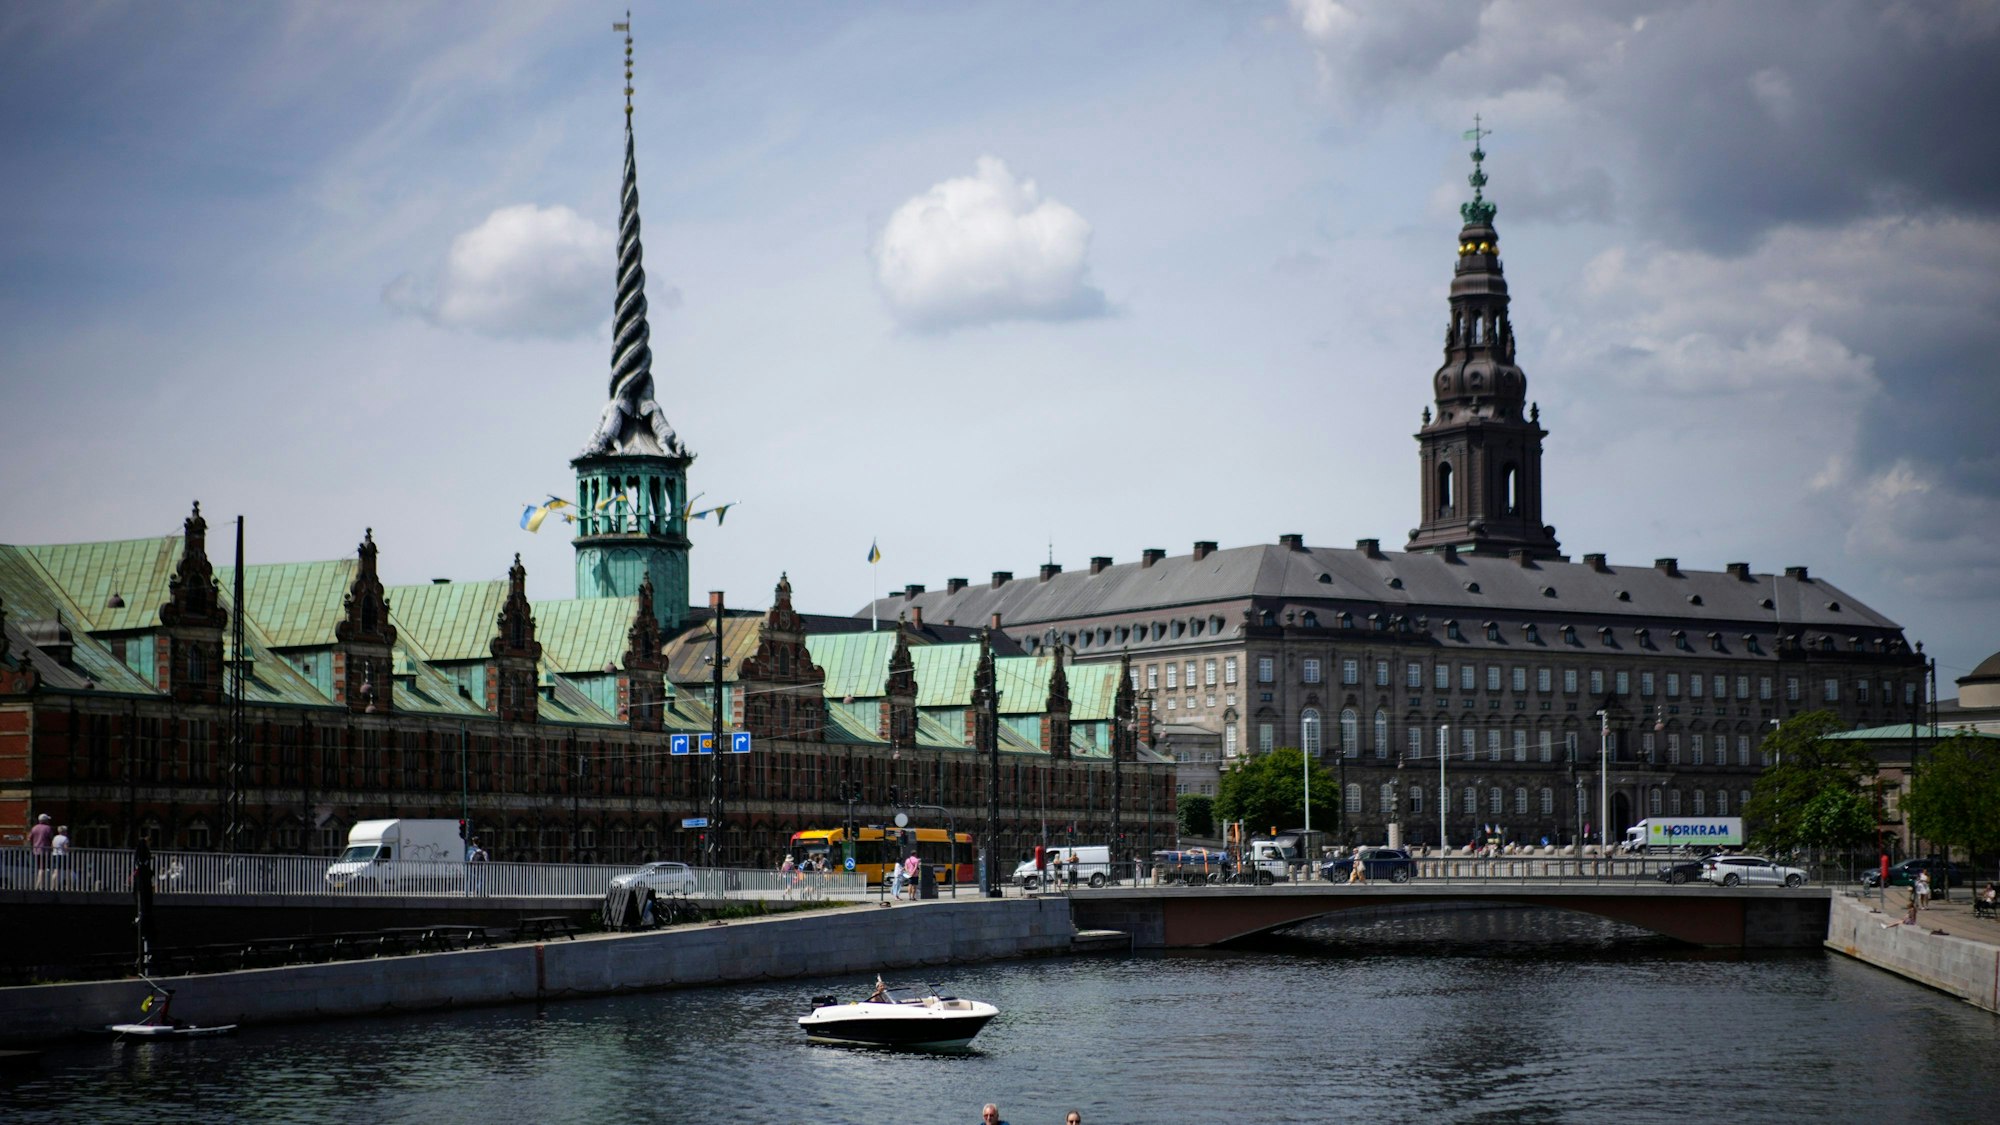 Die alte Börse in Kopenhagen (links), eines der ältesten Gebäude Kopenhagens, ist nach einem Großbrand teilweise eingestürzt. (Archivbild)